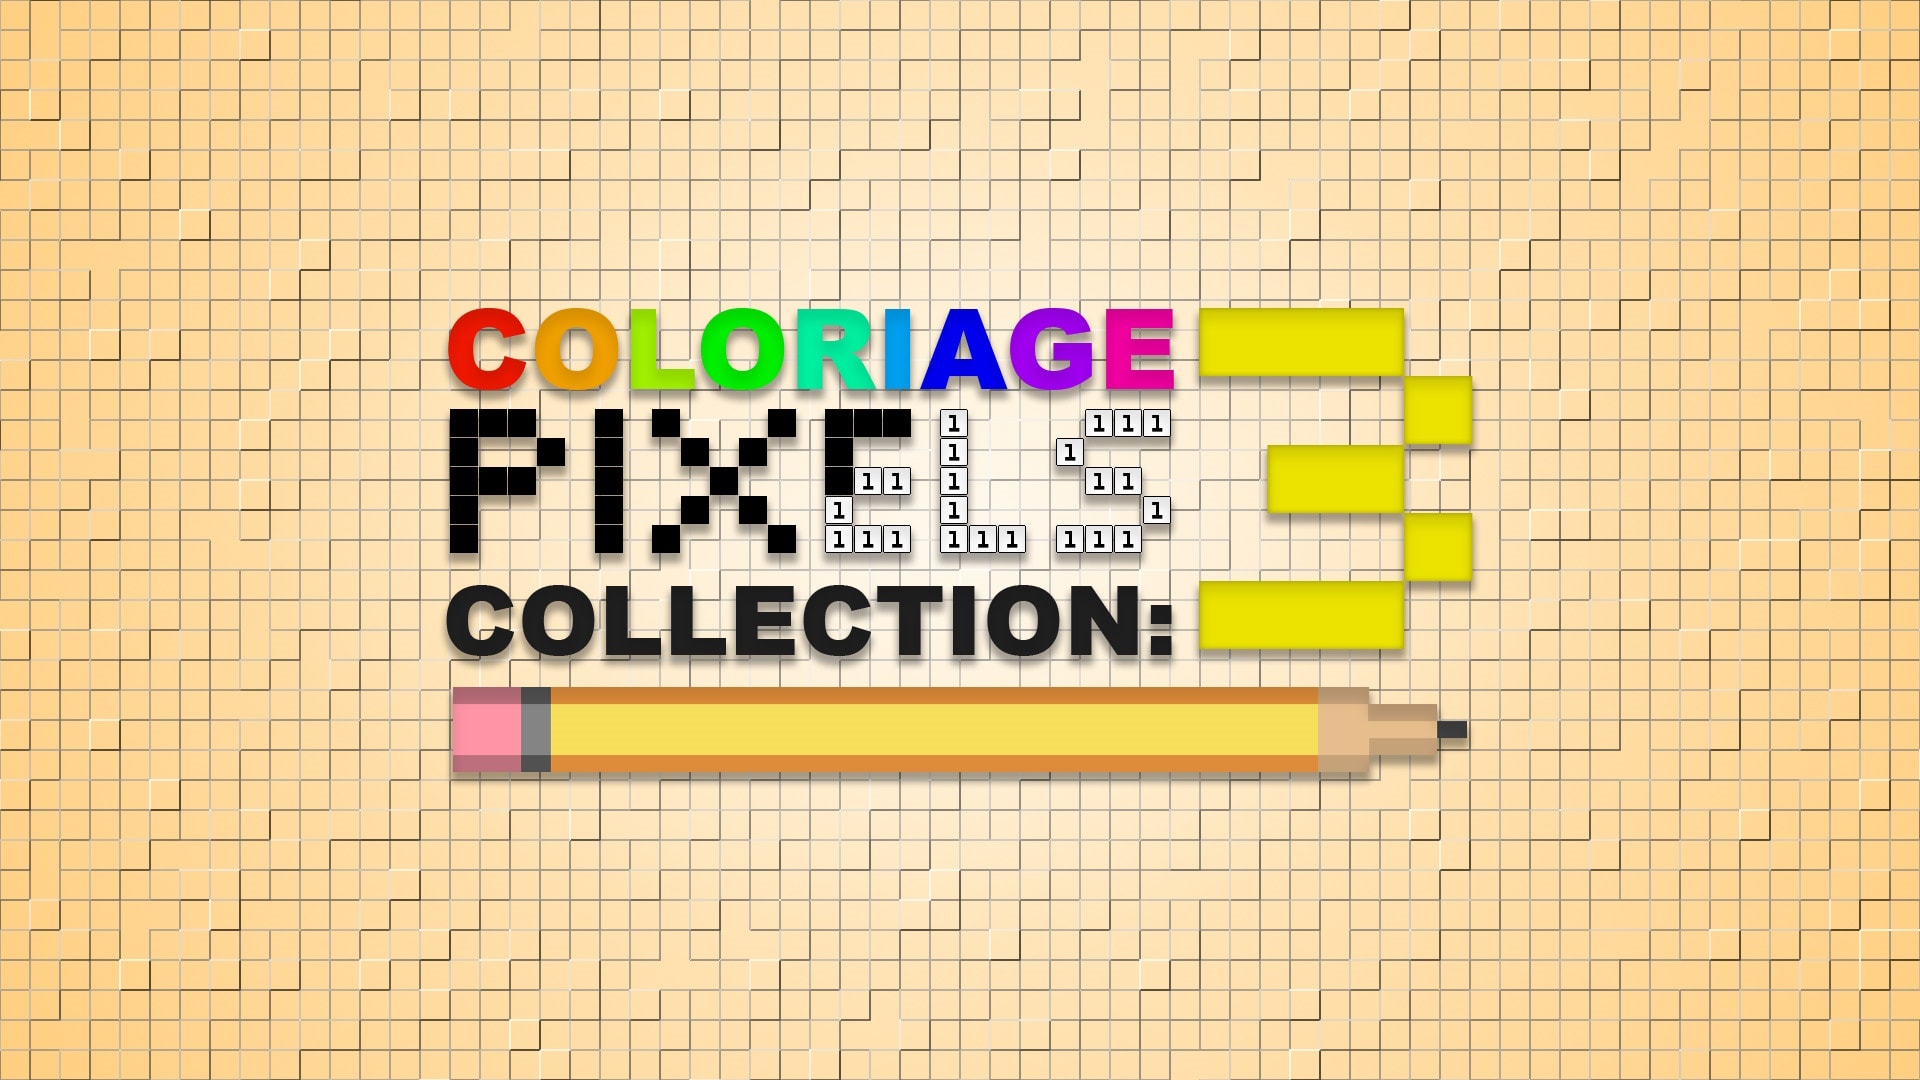 Coloriage de pixels : collection 3 1